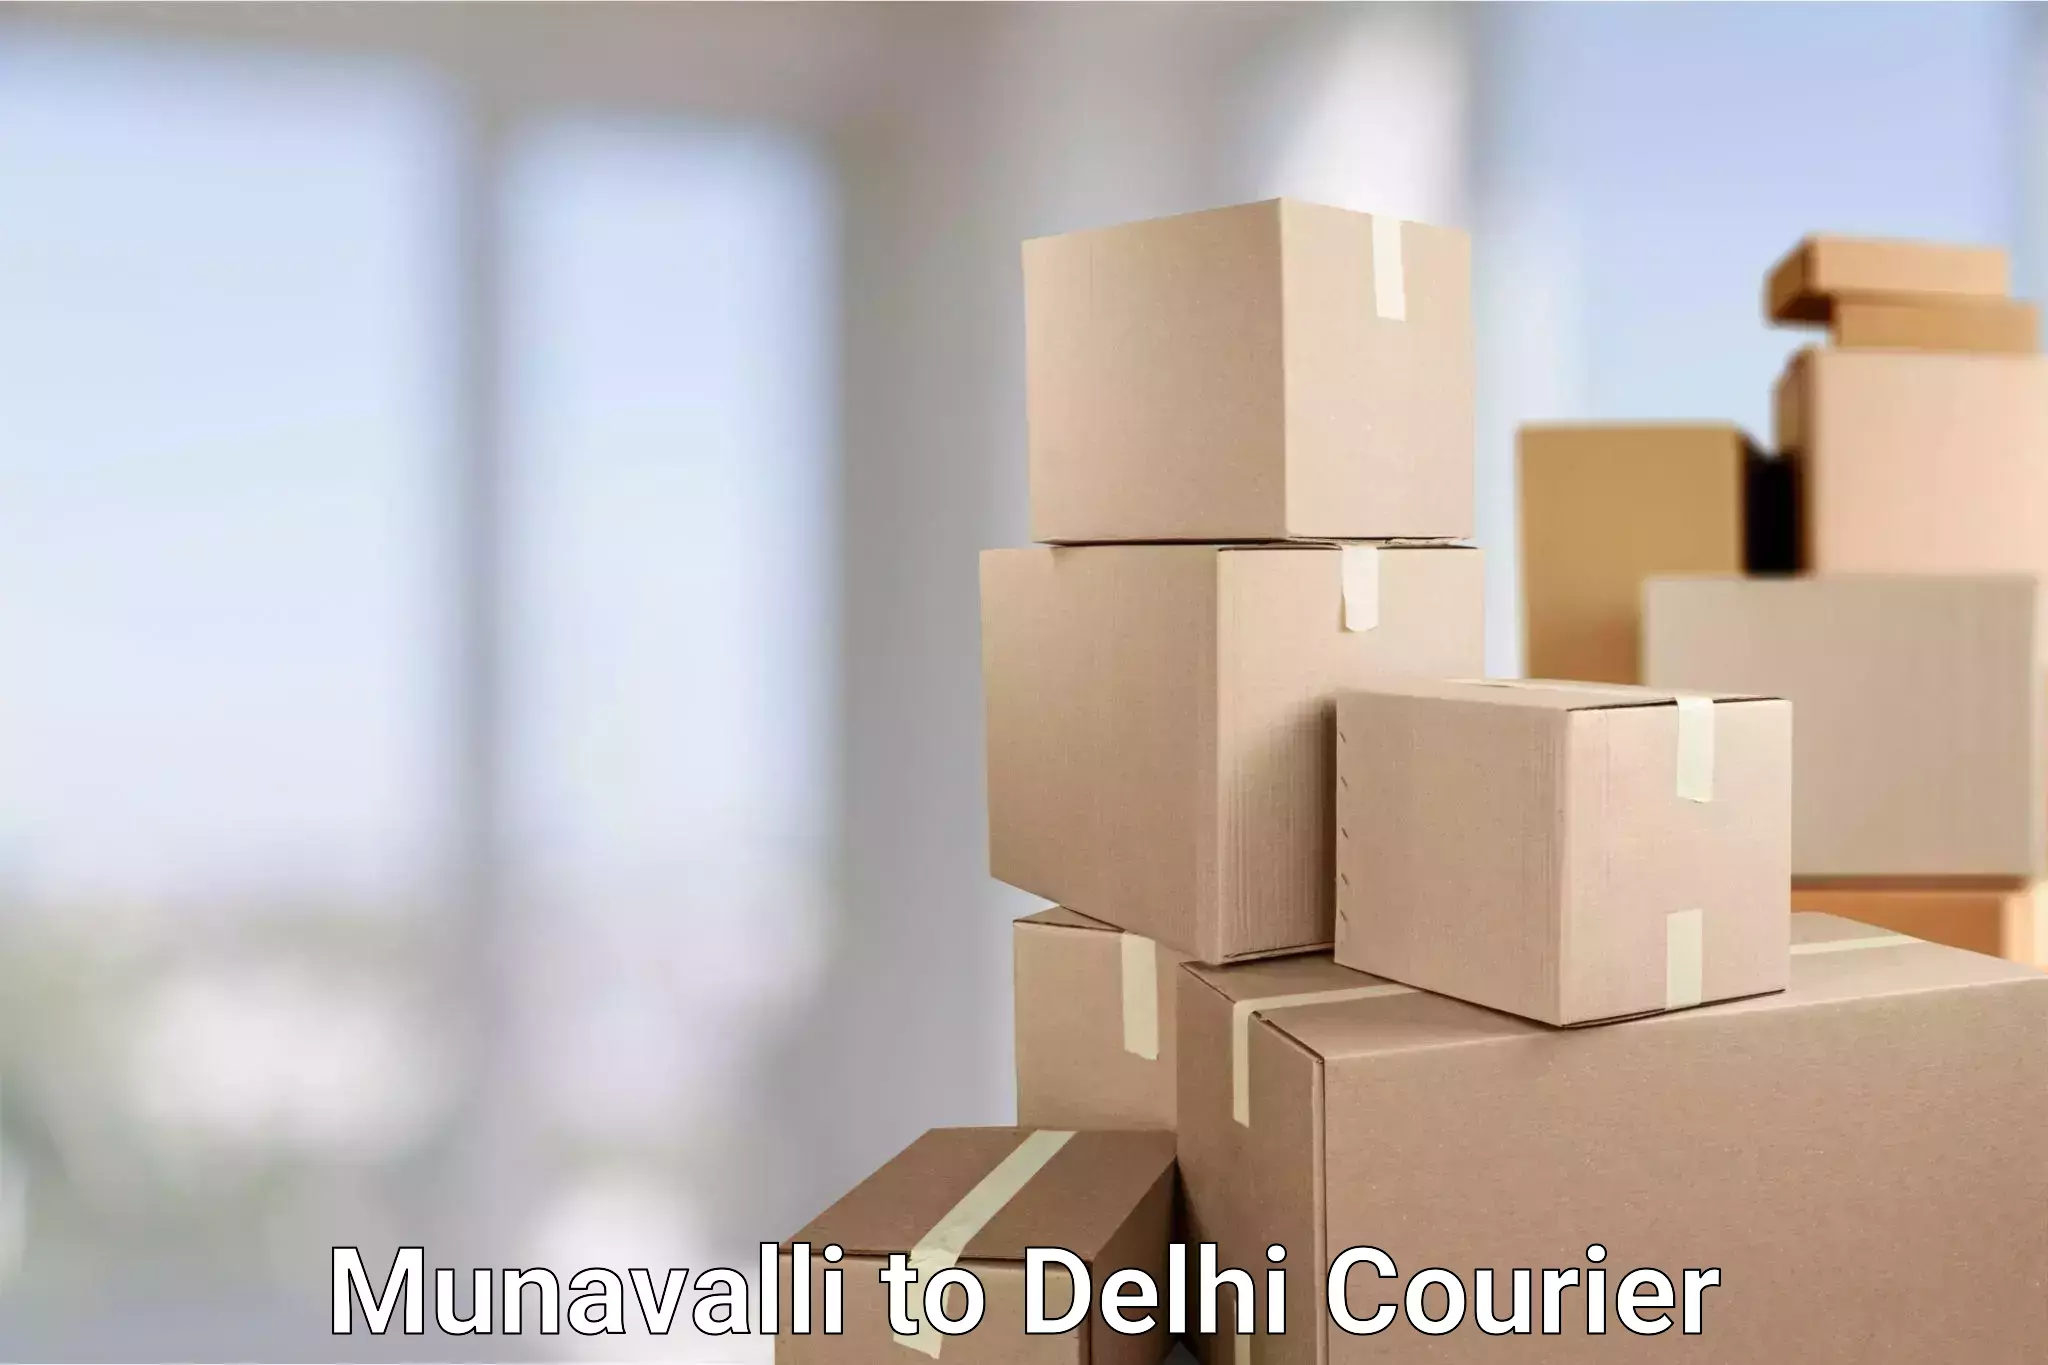 Automated parcel services Munavalli to Burari